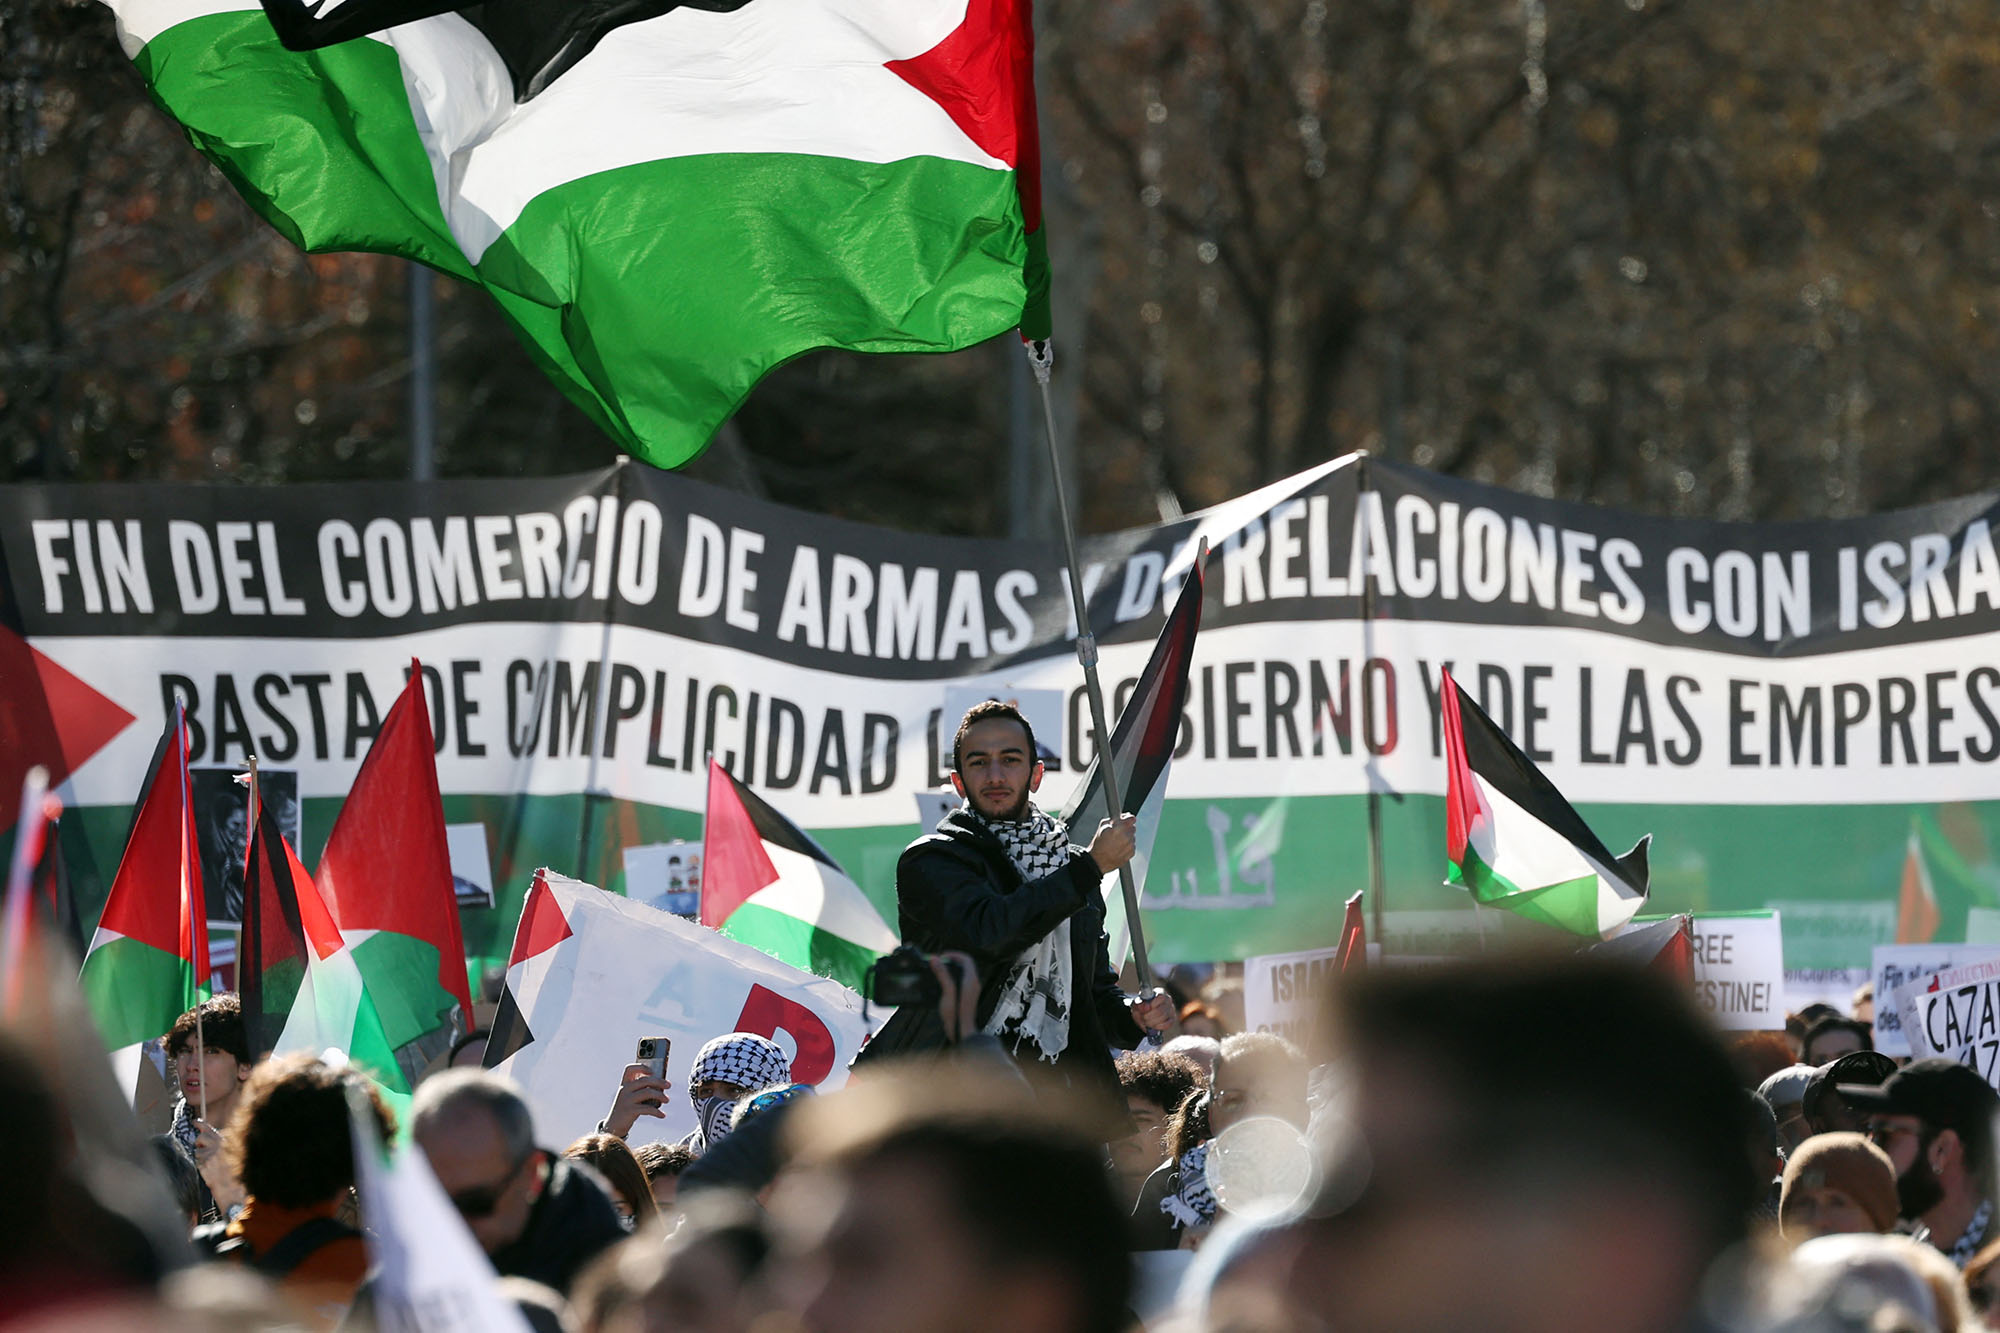 emonstranten in Madrid fordern "Stopp des Völkermords in Palästina" (Bild: Pierre-Philippe Marcou/AFP)